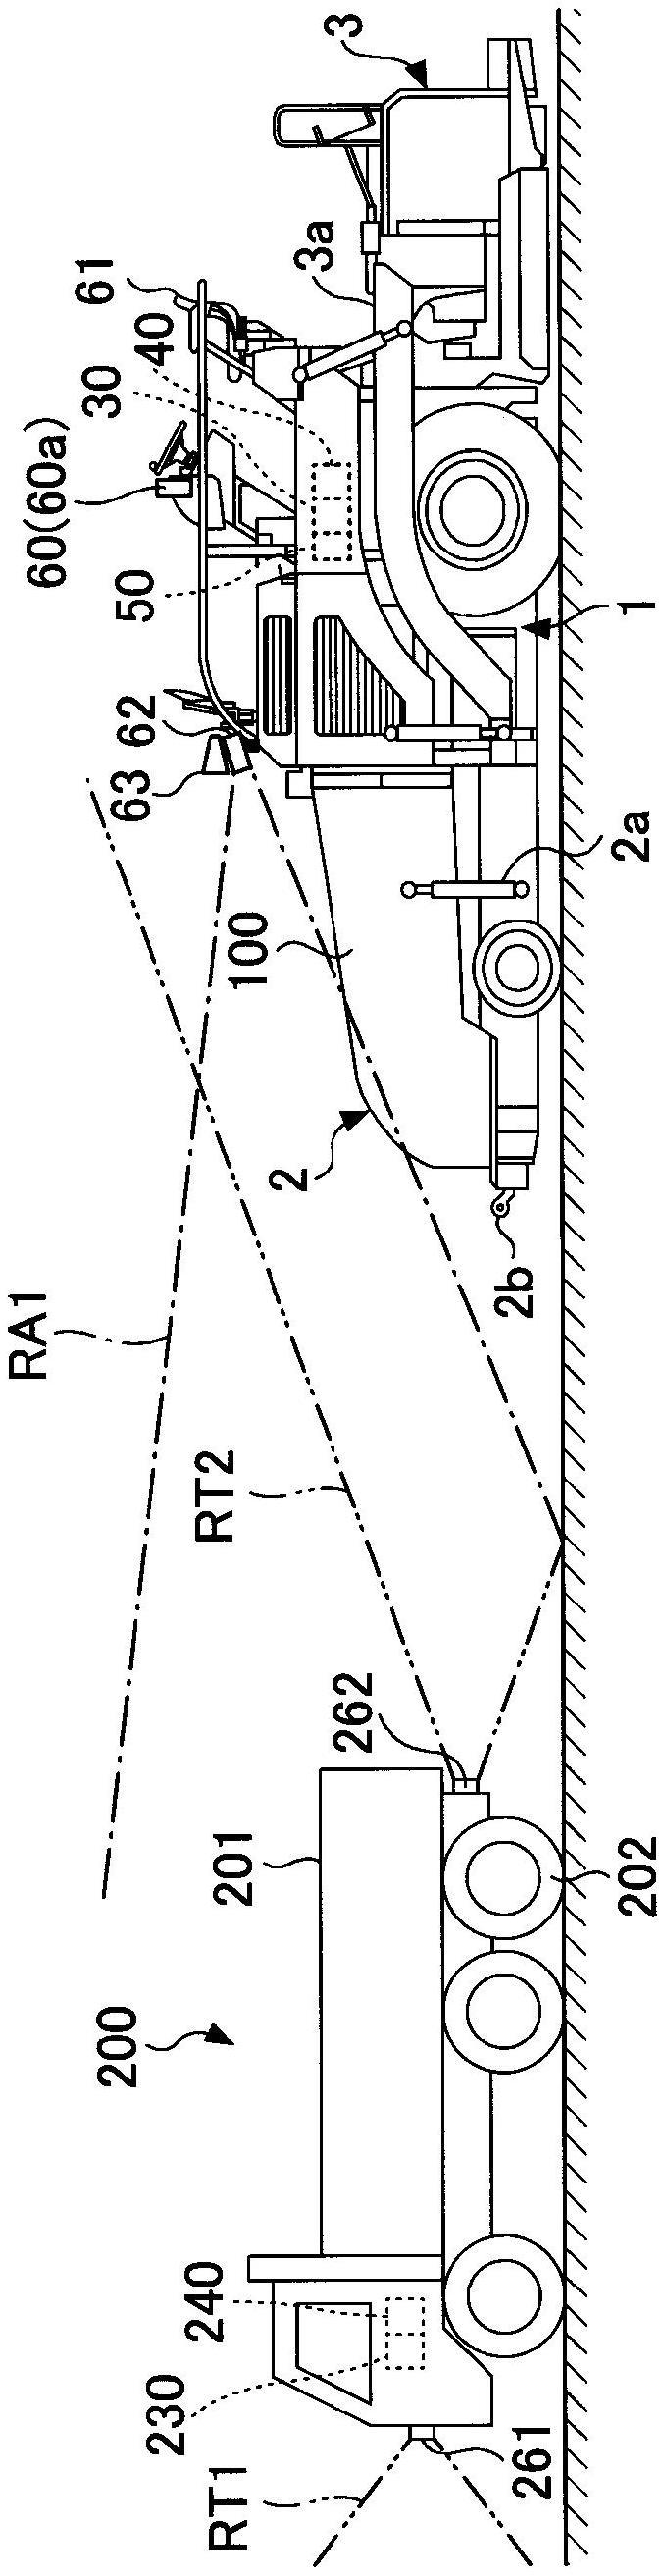 沥青滚平机及沥青滚平机的施工支援系统的制作方法